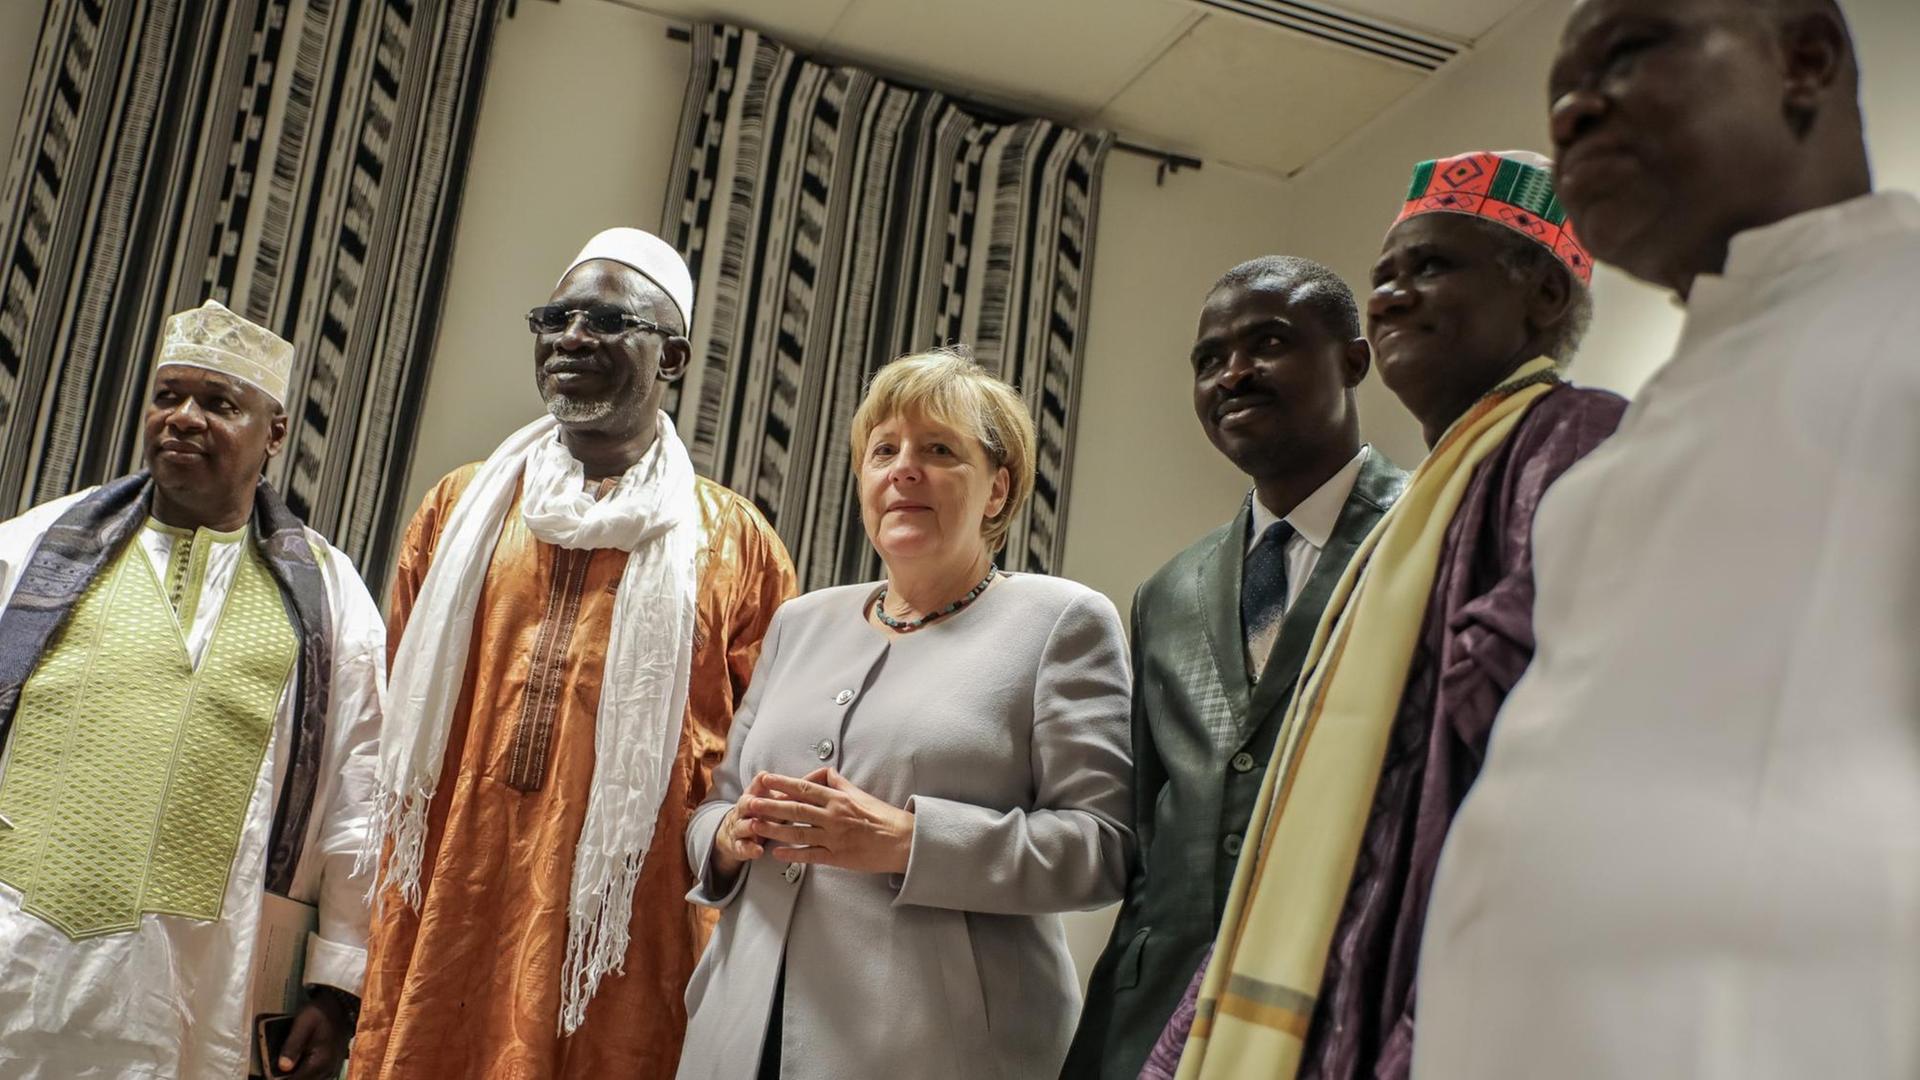 Bundeskanzlerin Angela Merkel (CDU) steht in Bamako in Mali nach einem Gespräch zwischen Vertretern verschiedener religiöser Gruppen in Mali.